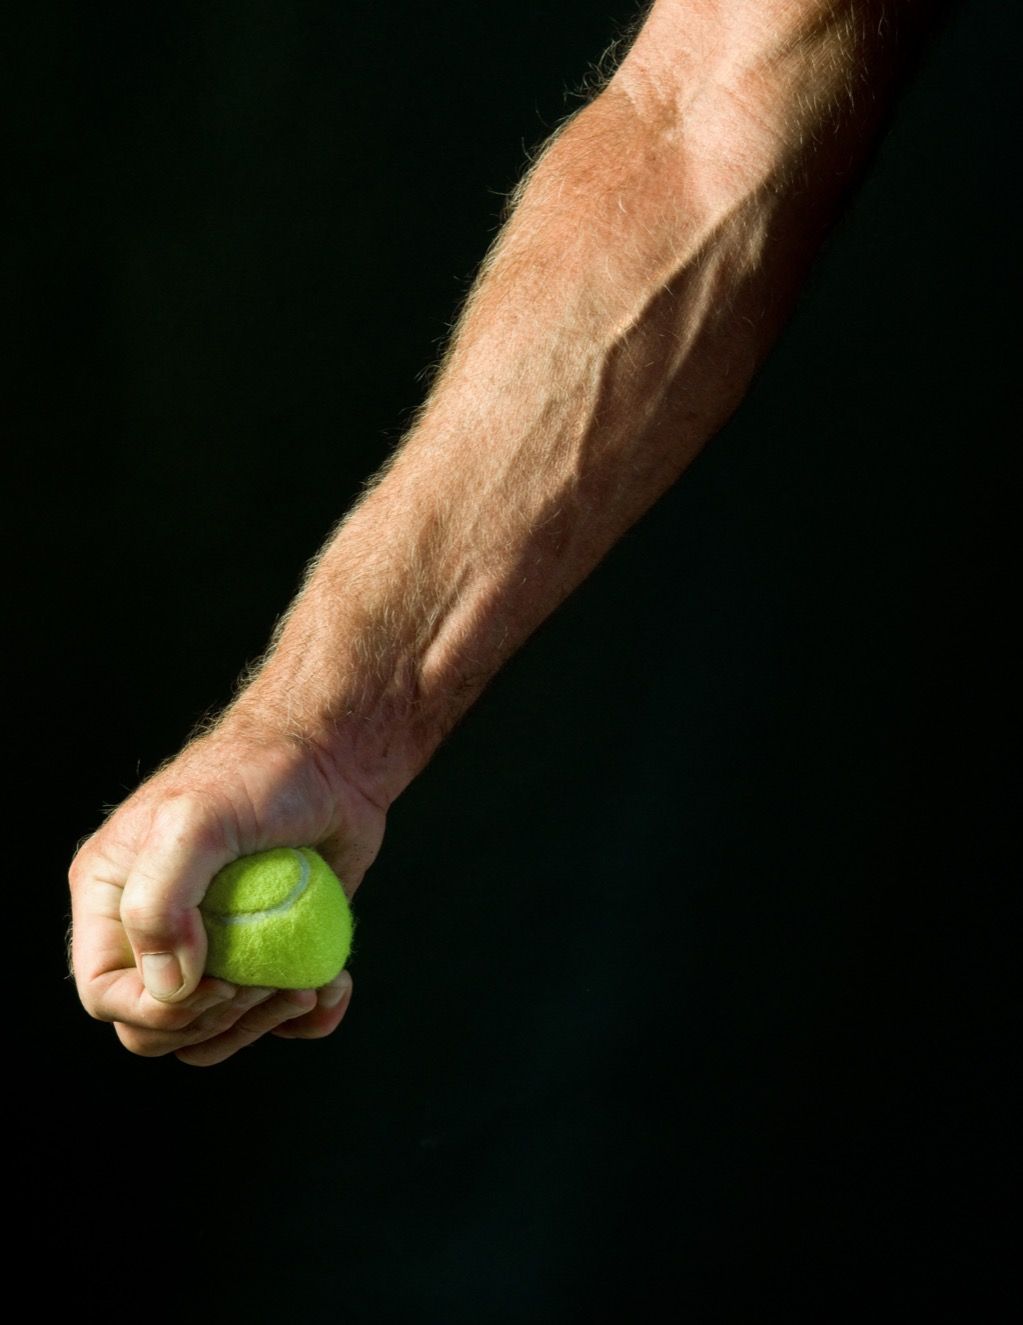 אדם לוחץ כדור טניס בגלל לחץ דם נמוך.